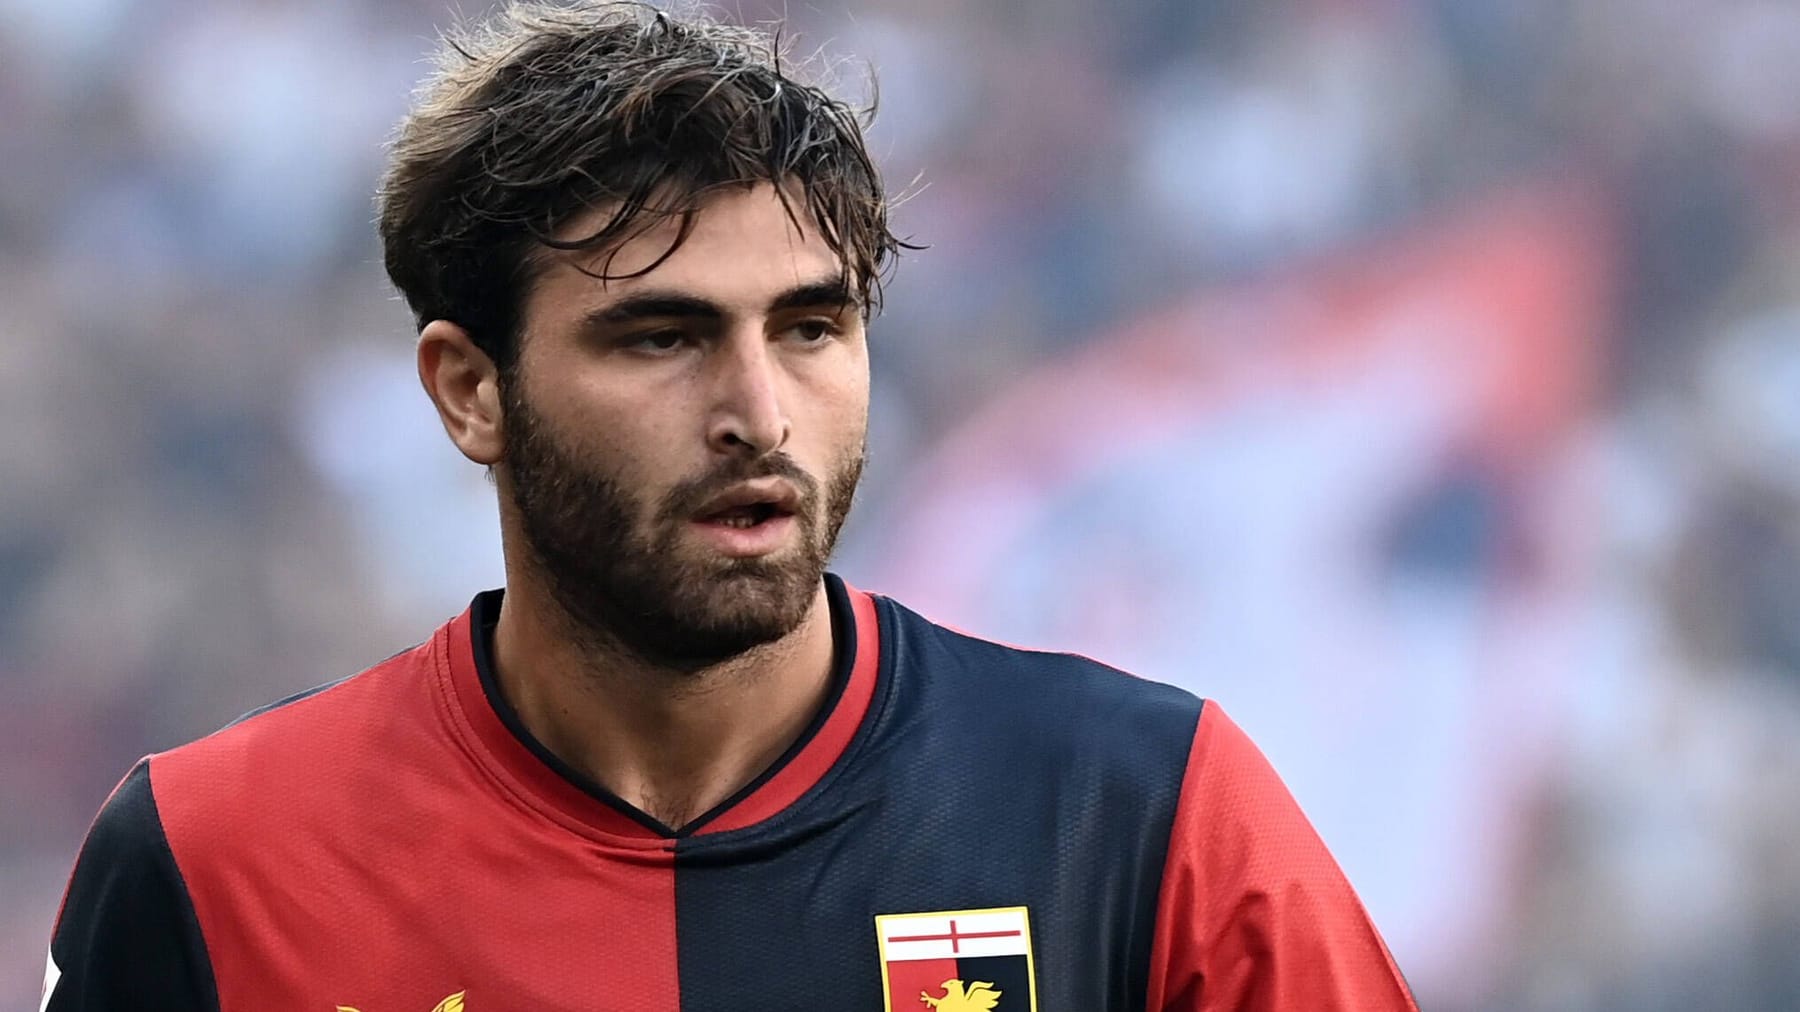 Il calciatore italiano Manolo Portanova è stato condannato a una lunga pena detentiva